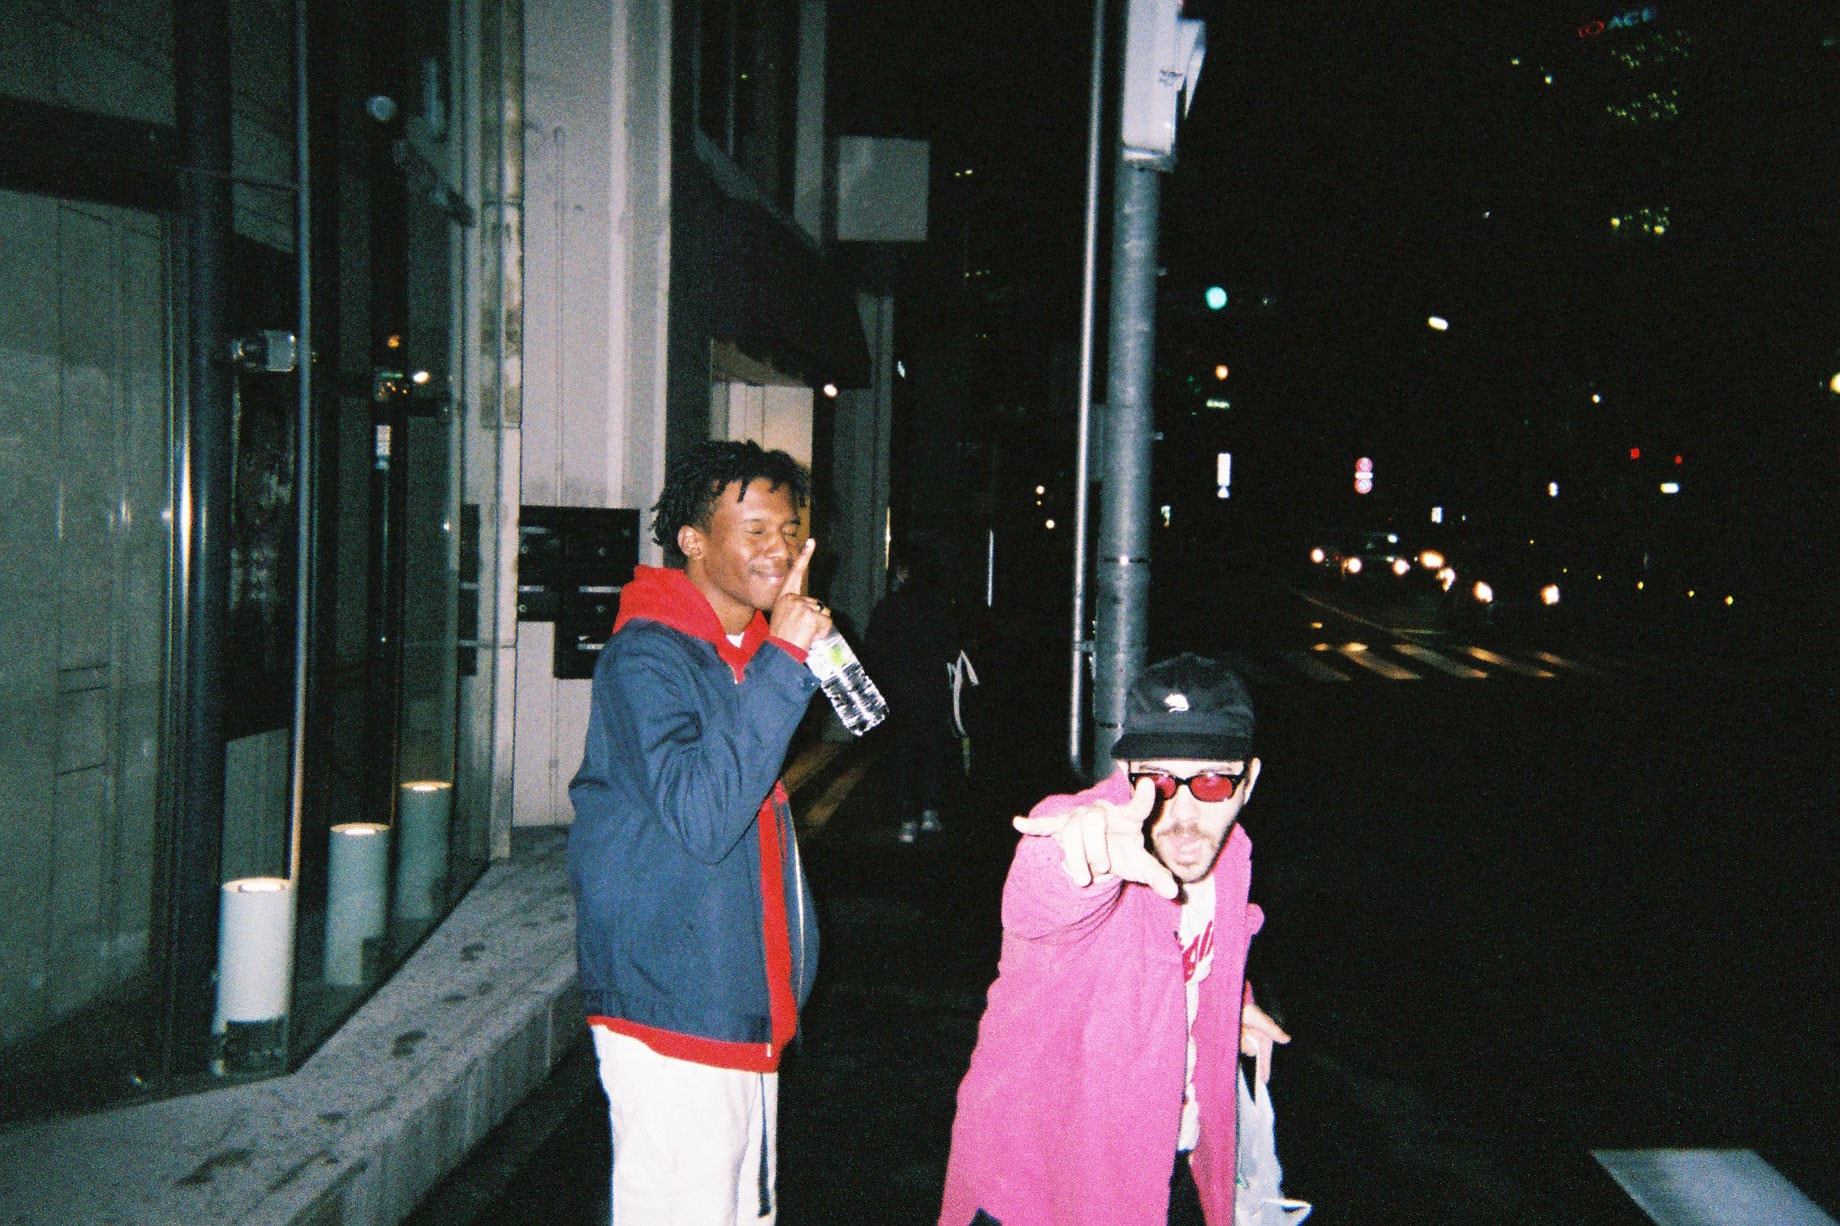 Back To Film：西海岸発 OFWGKTA の Taco が写ルンですで Tyler,The Creator らの東京ライフを激写 Tyler のライブ舞台裏から東京観光を楽しむ「OFWGKTA」クルーの素顔まで、リラックスムード溢れるフォトダイアリーに注目 MTV Video Music Award Yonkers Vans ヴァンズ Converse コンバース Tyler The Creator タイラー・ザ・クリエイター Pharrell Willams ファレル・ウィリアムス Kanye West カニエ・ウェスト Left Brain レフト・ブレイン L Boy エル・ボーイ Taco タコ Odd Future  HYPEBEAST ハイプビースト